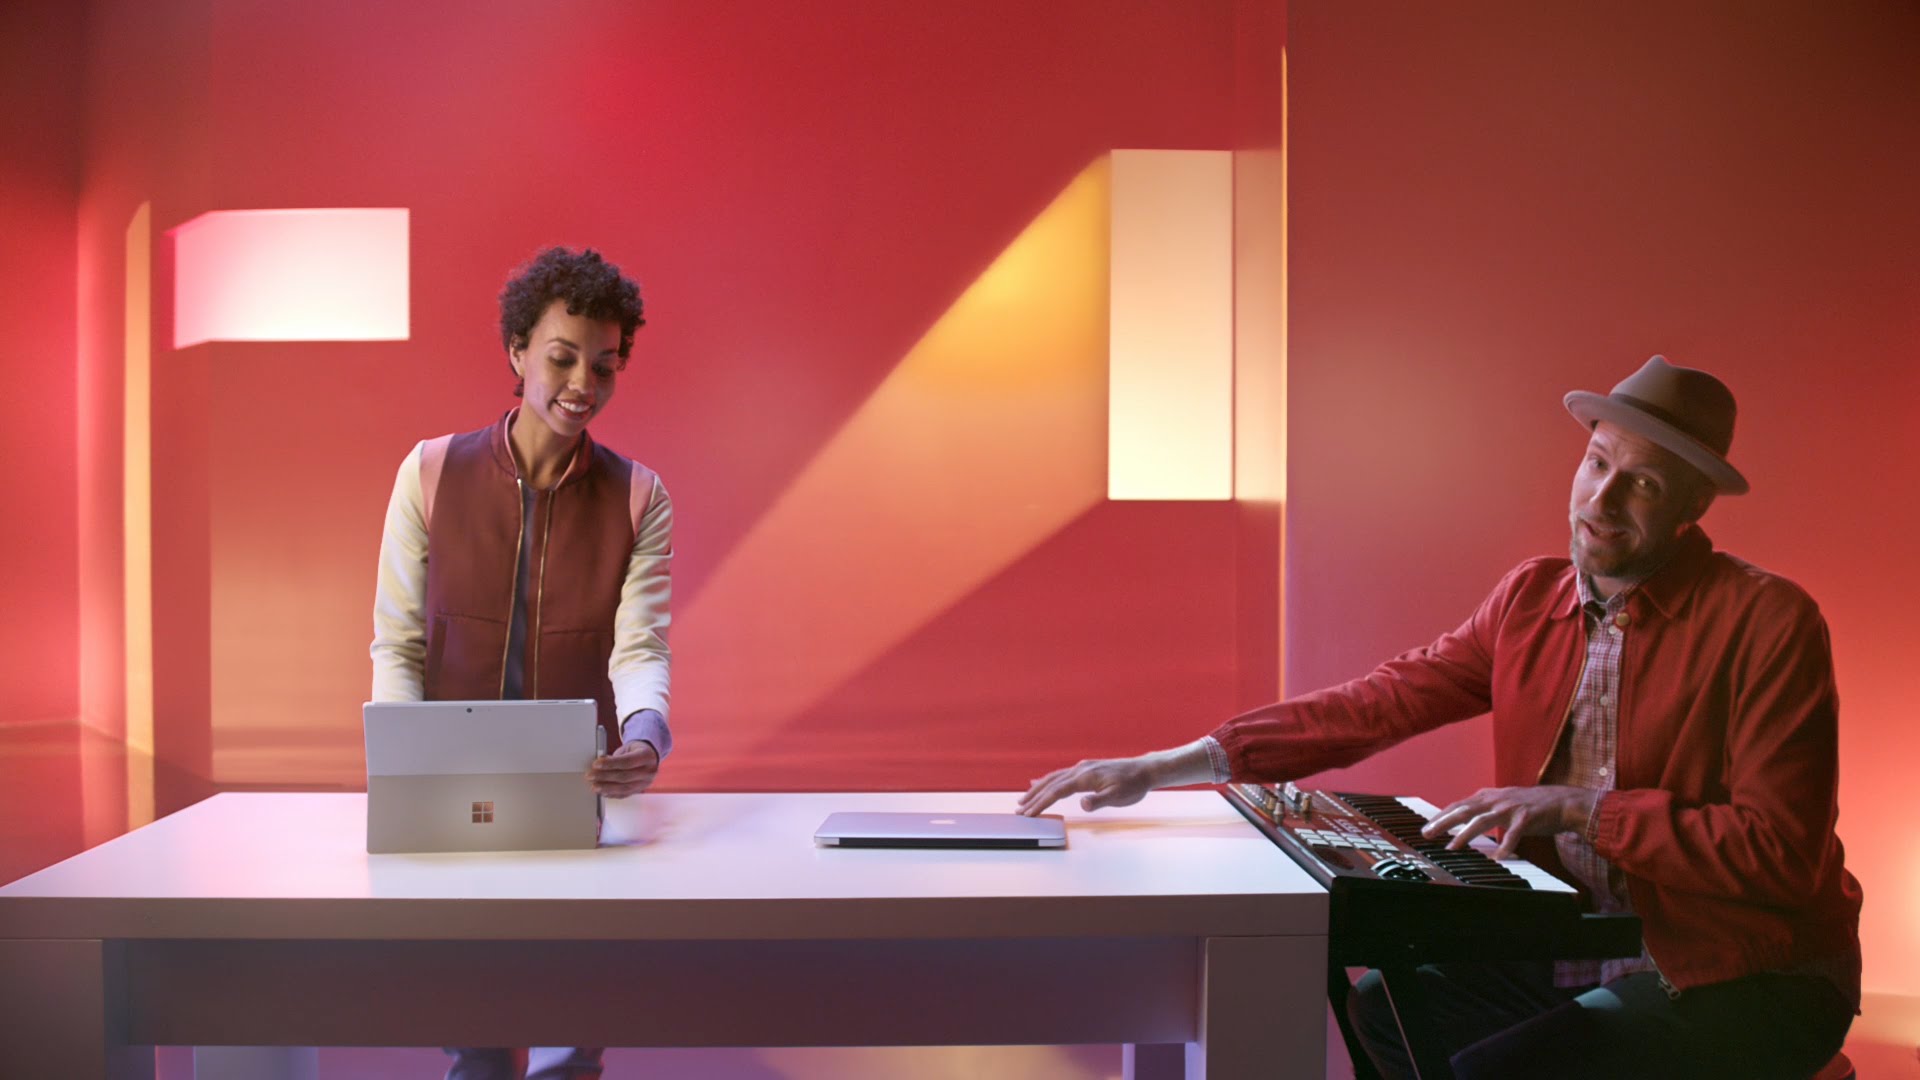 Σε νέο διαφημιστικό σποτ της, η Microsoft συγκρίνει το Surface Pro 4 με το MacBook Air